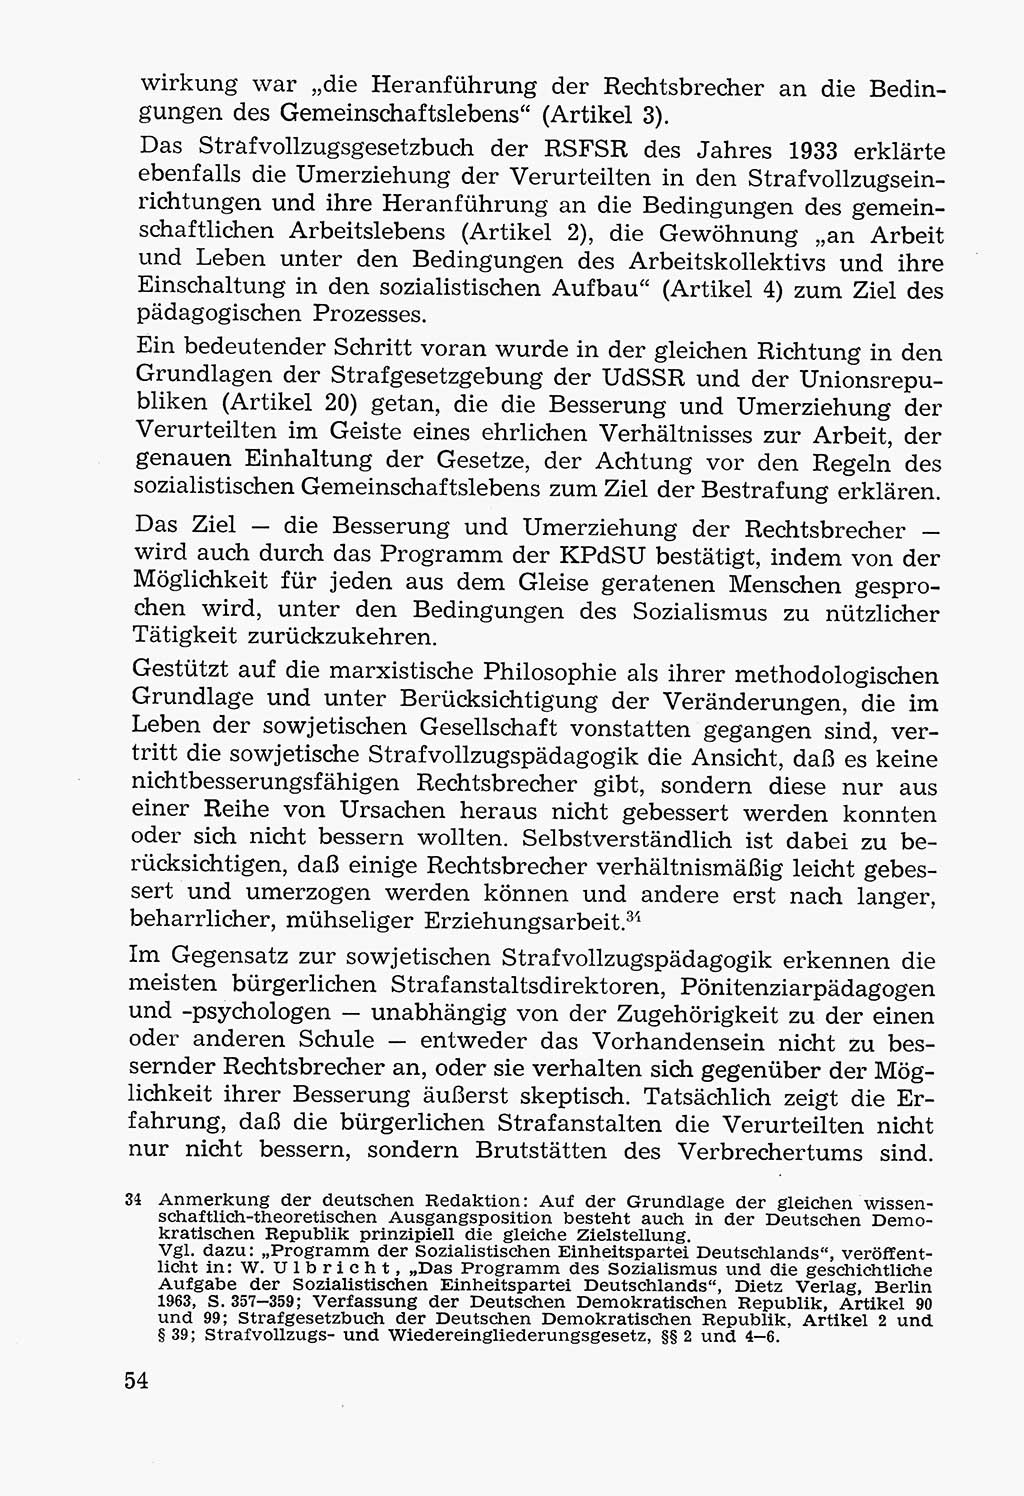 Lehrbuch der Strafvollzugspädagogik [Deutsche Demokratische Republik (DDR)] 1969, Seite 54 (Lb. SV-Pd. DDR 1969, S. 54)